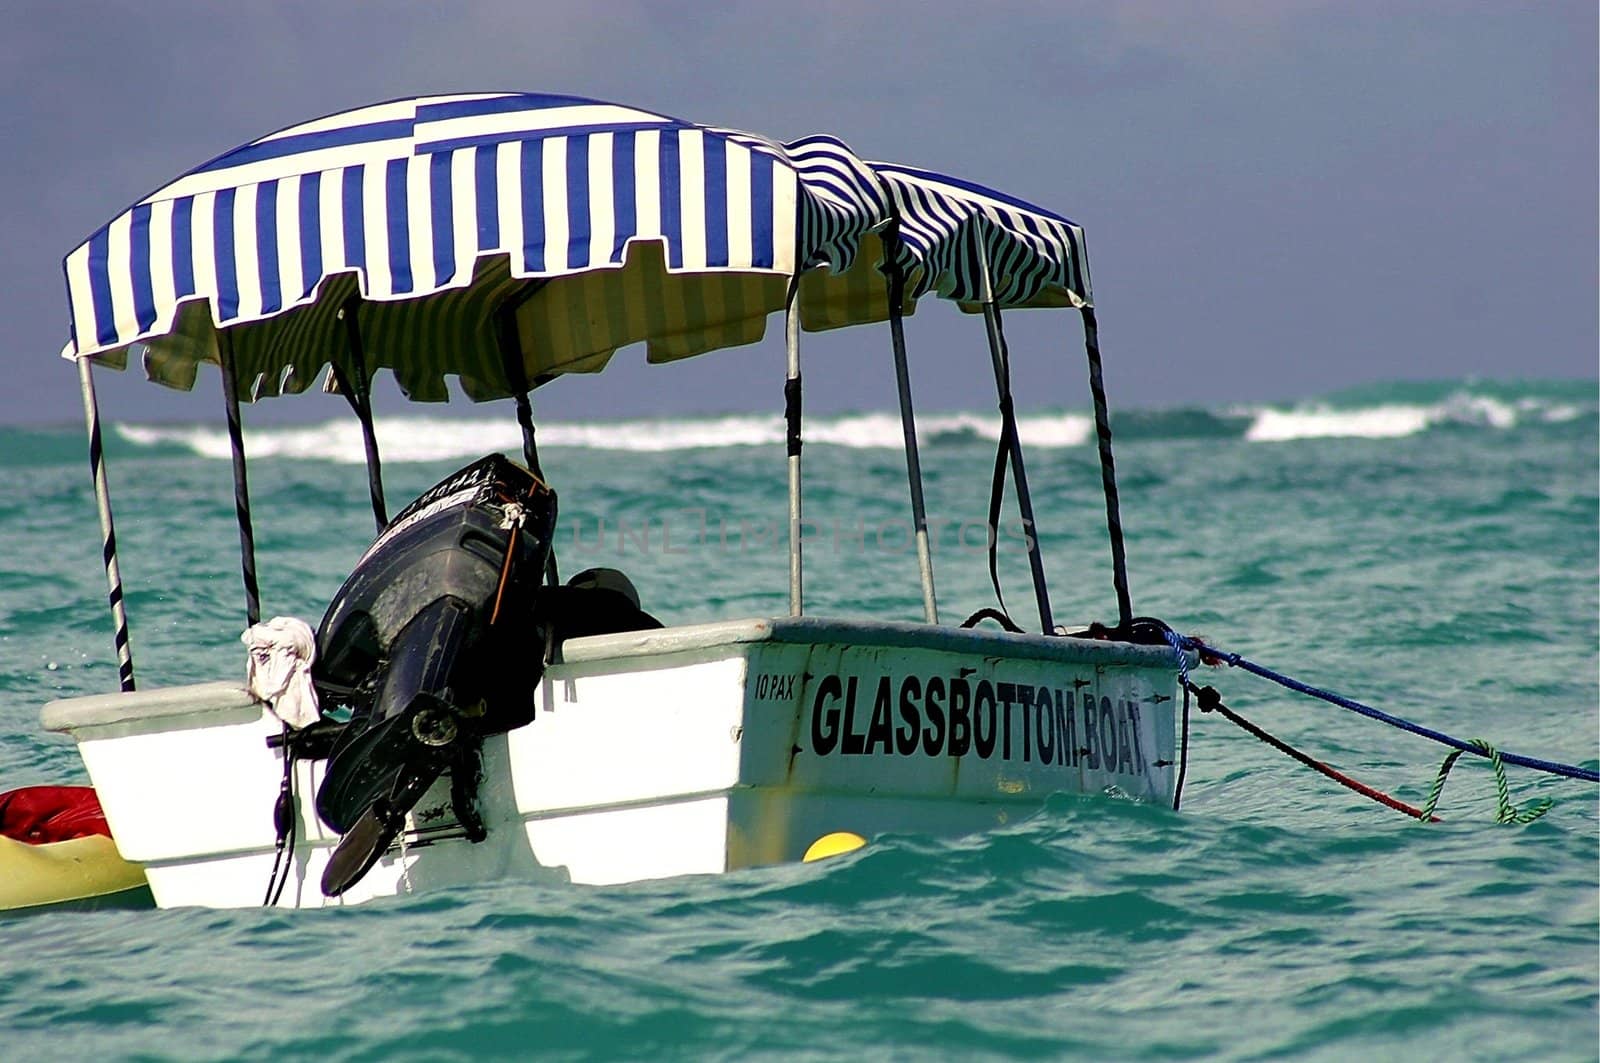 Small glass bottom boat anchored near Carabean Island